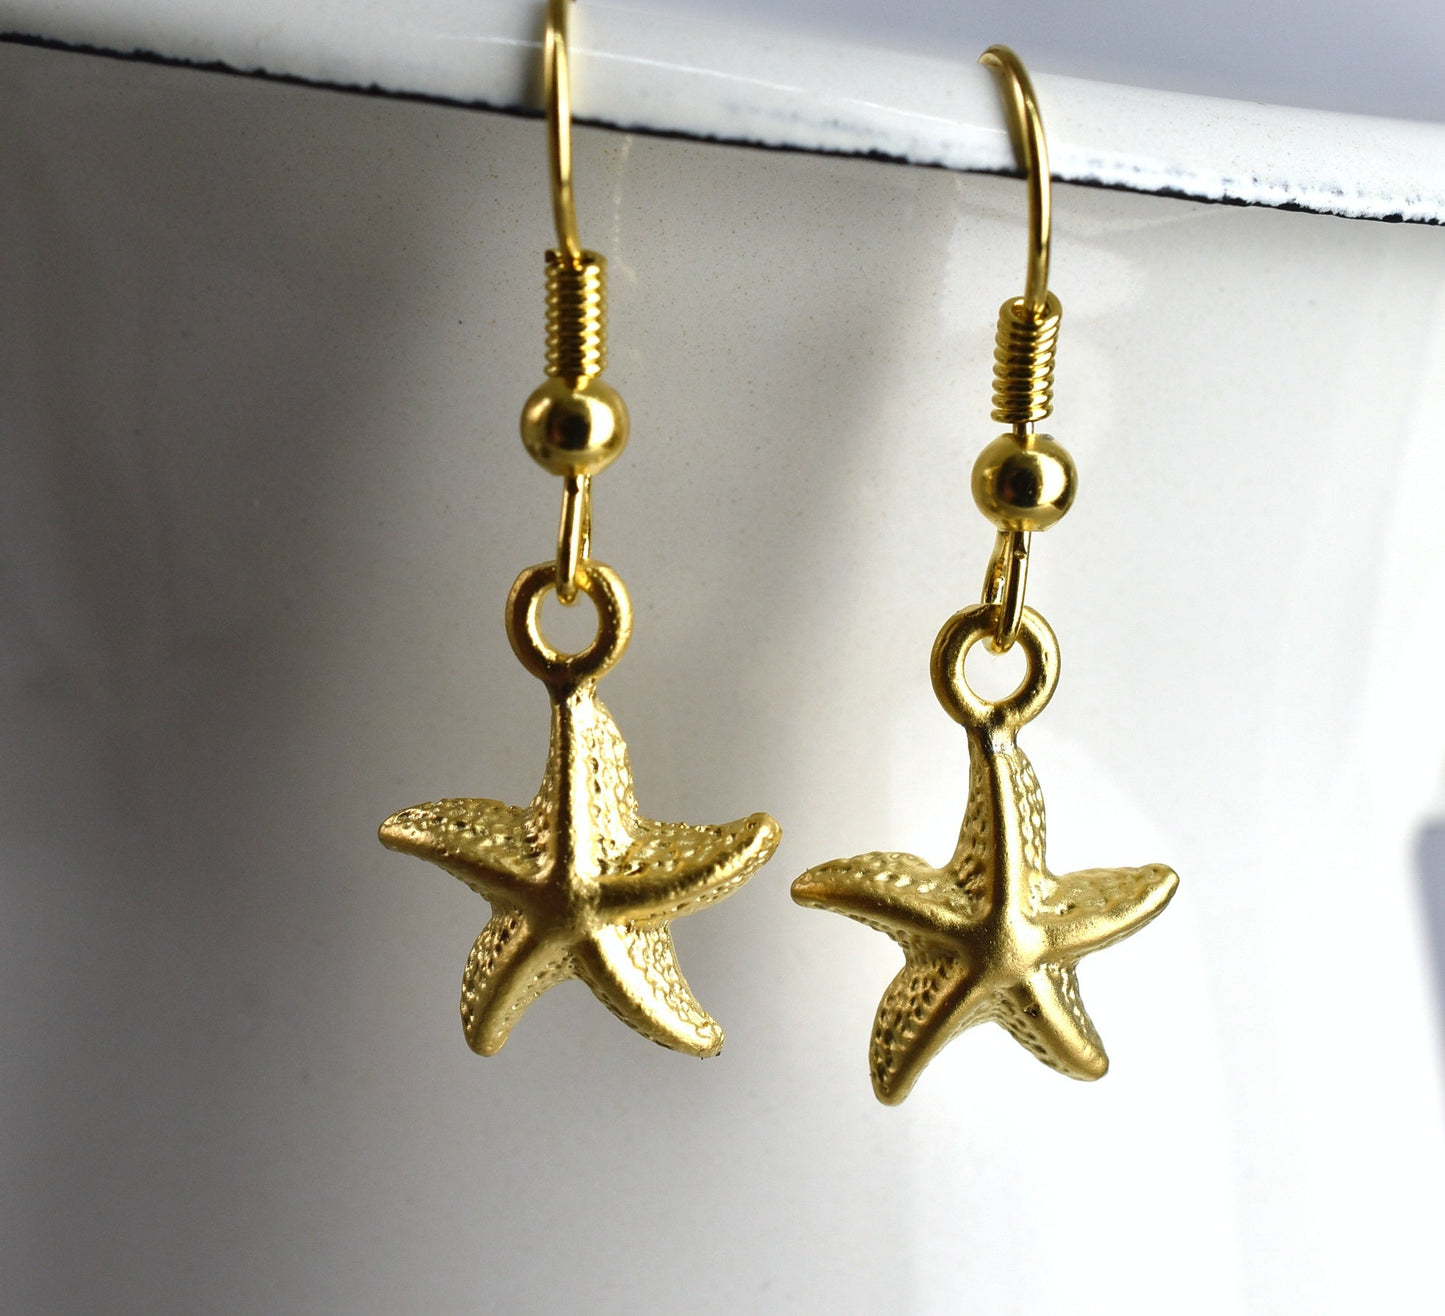 Boucles d'oreilles dorées "Starfish" - VinoHR-82